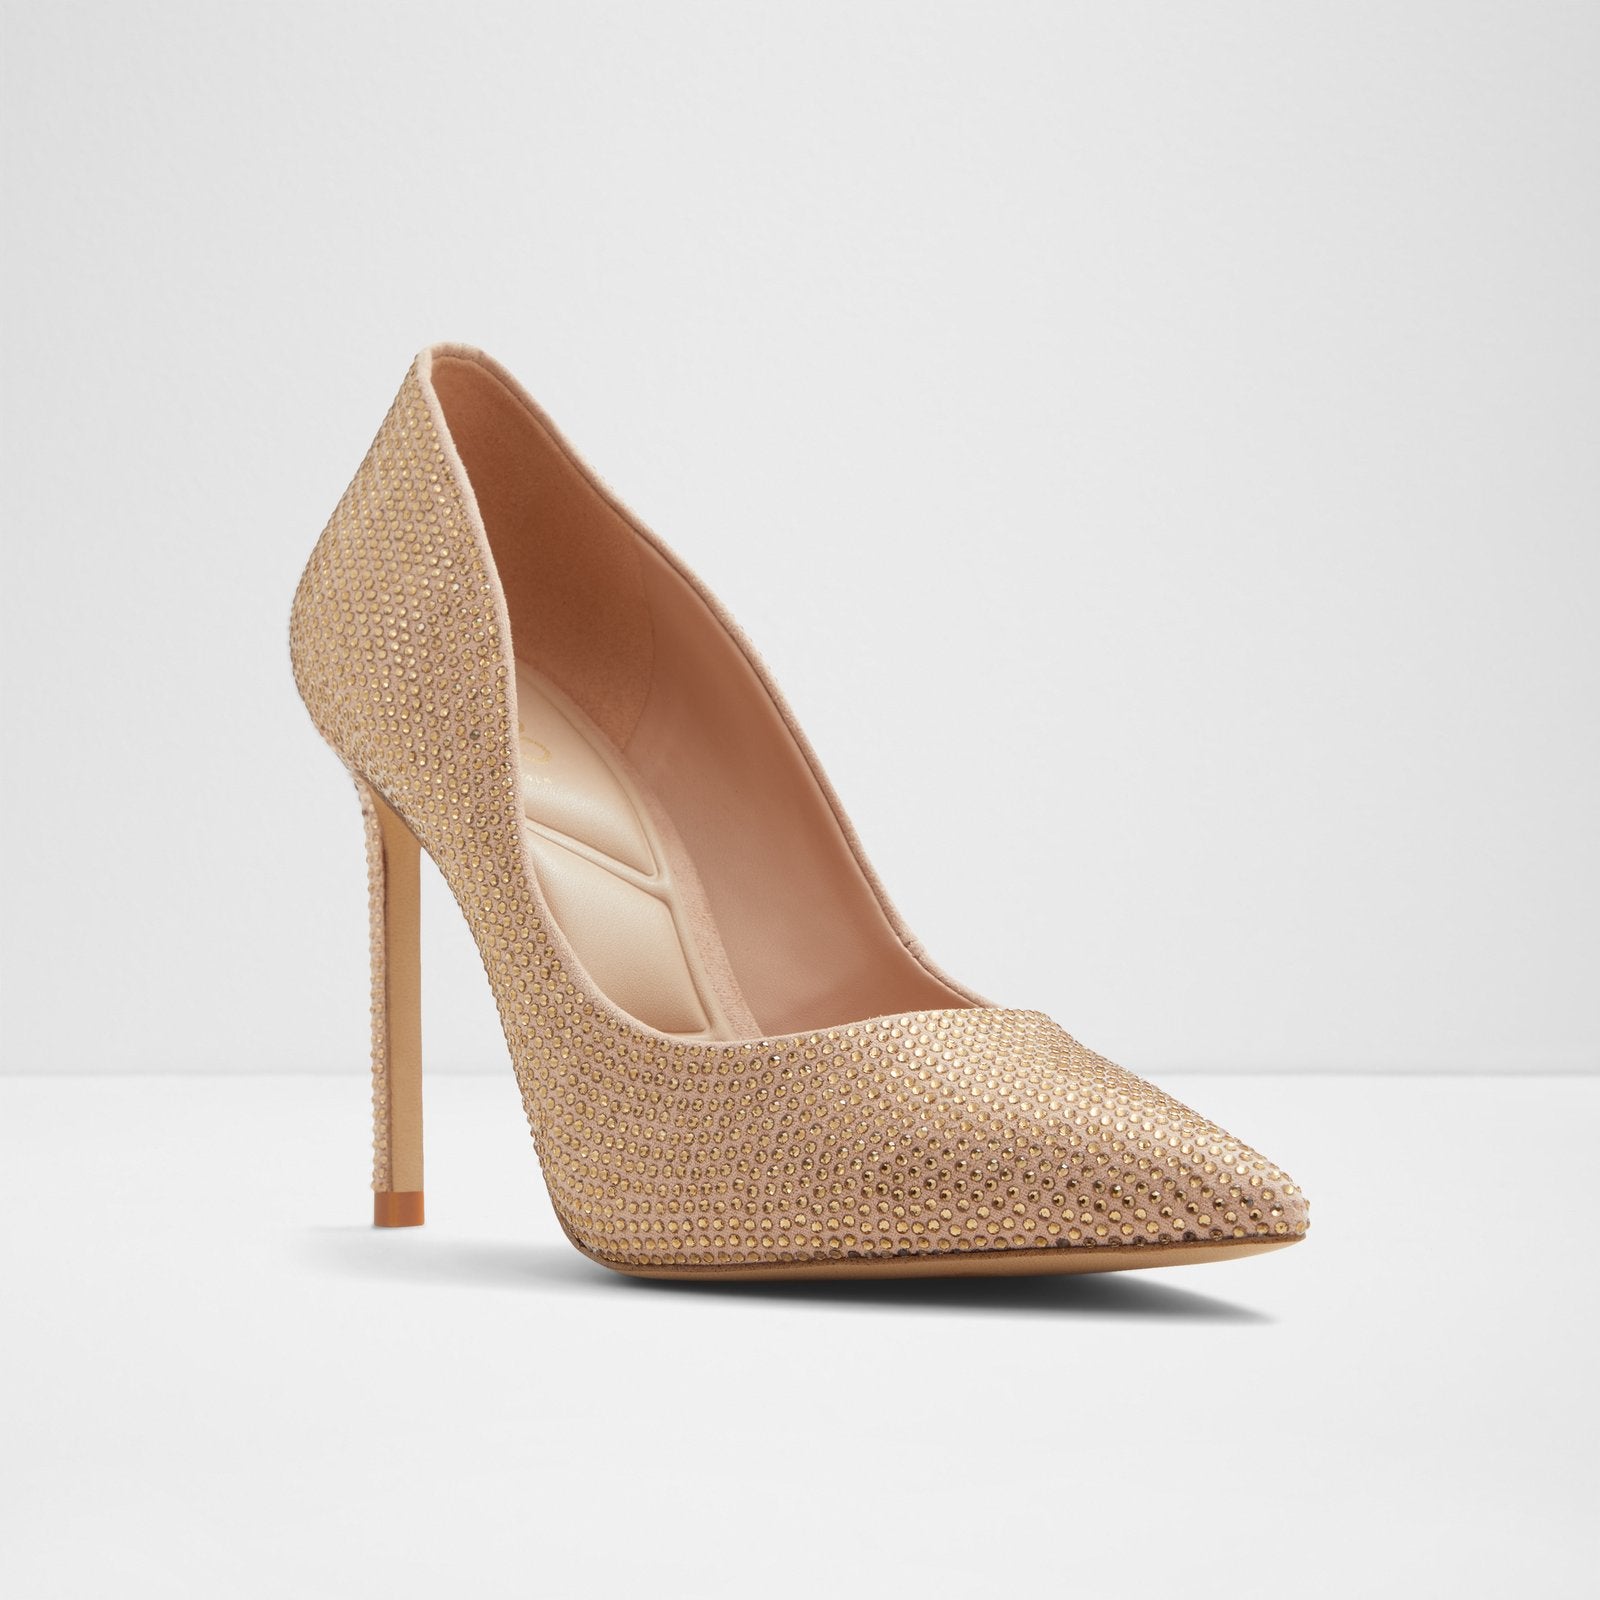 Stessy2.0 / Heeled Women Shoes - Light Beige - ALDO KSA